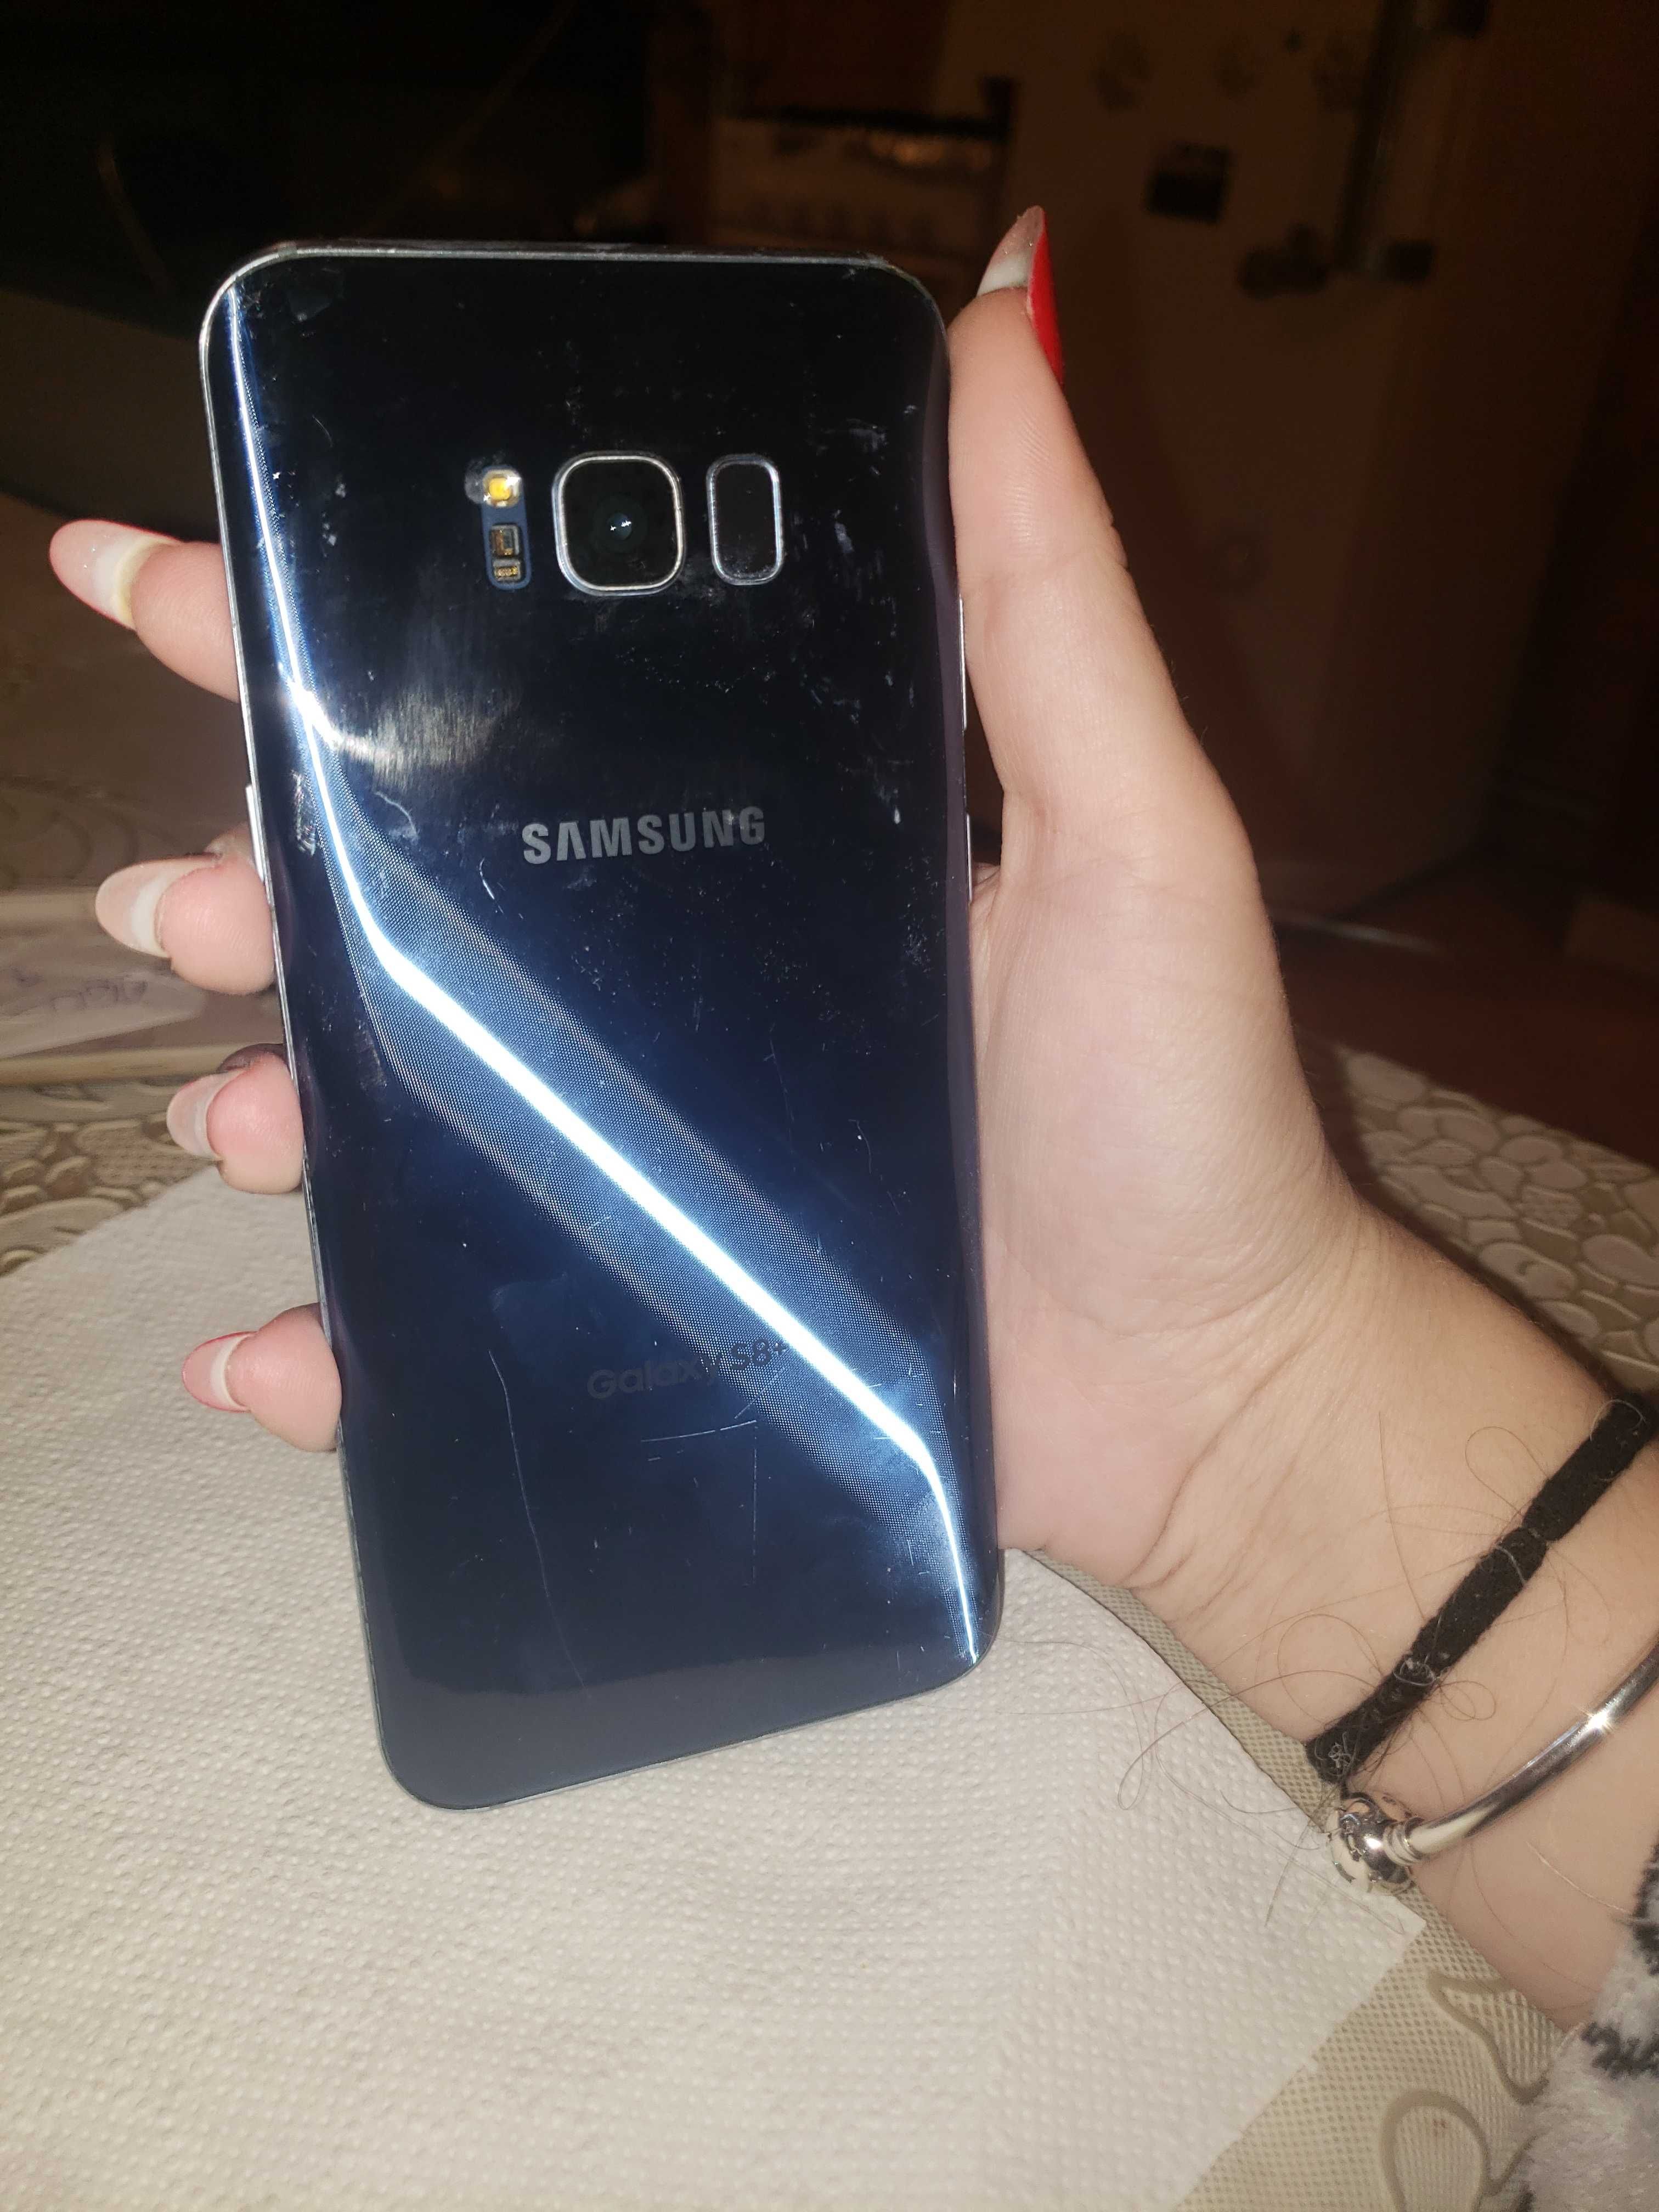 Samsung S8 plus, 64 de gb, albastru, in condiții bune